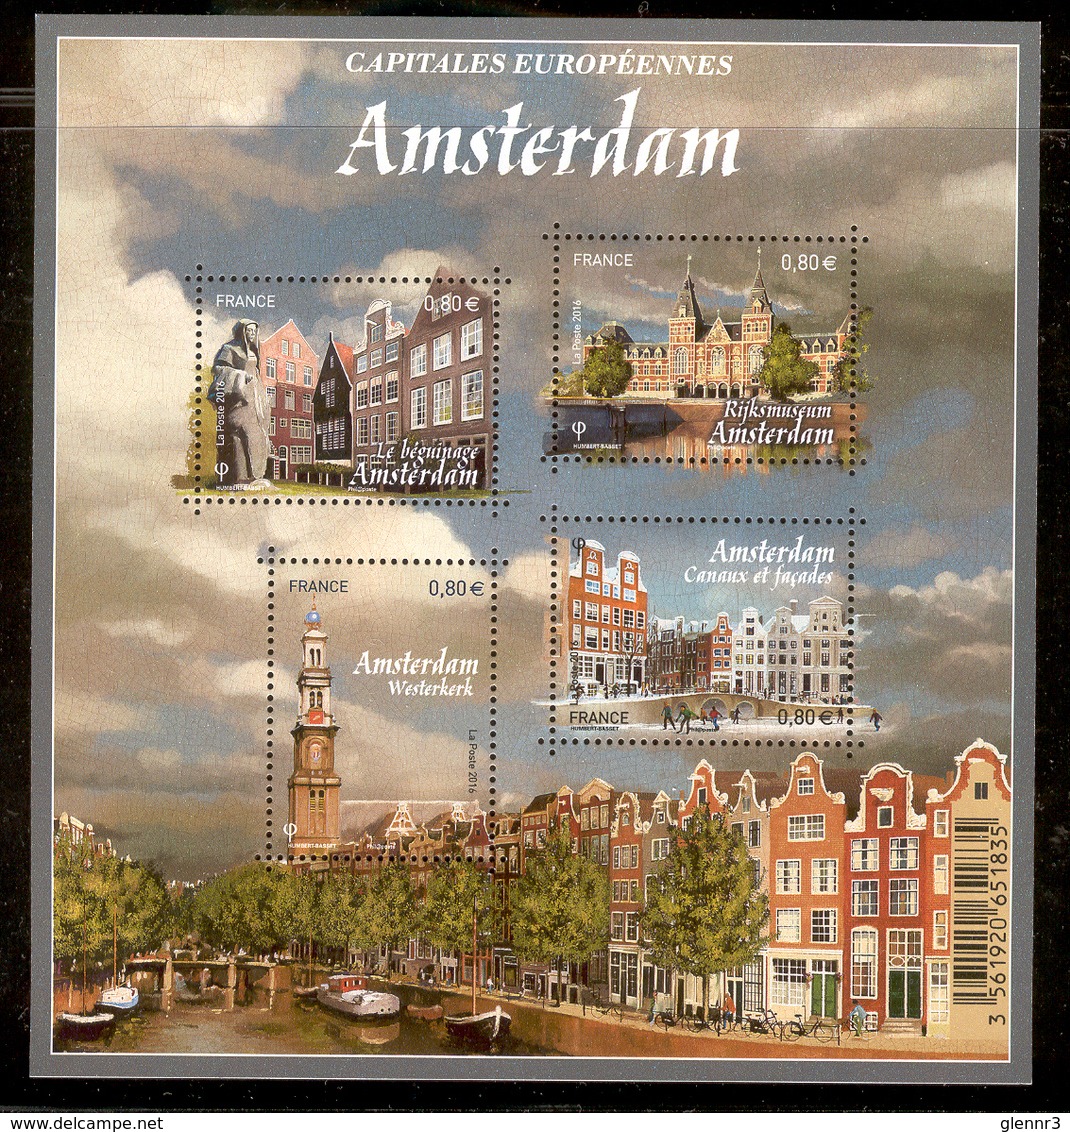 FRANCE 2016 European Capitals-Amsterdam, Scott # 5114 MNH Souvenir Sheet Of 4 - Ungebraucht